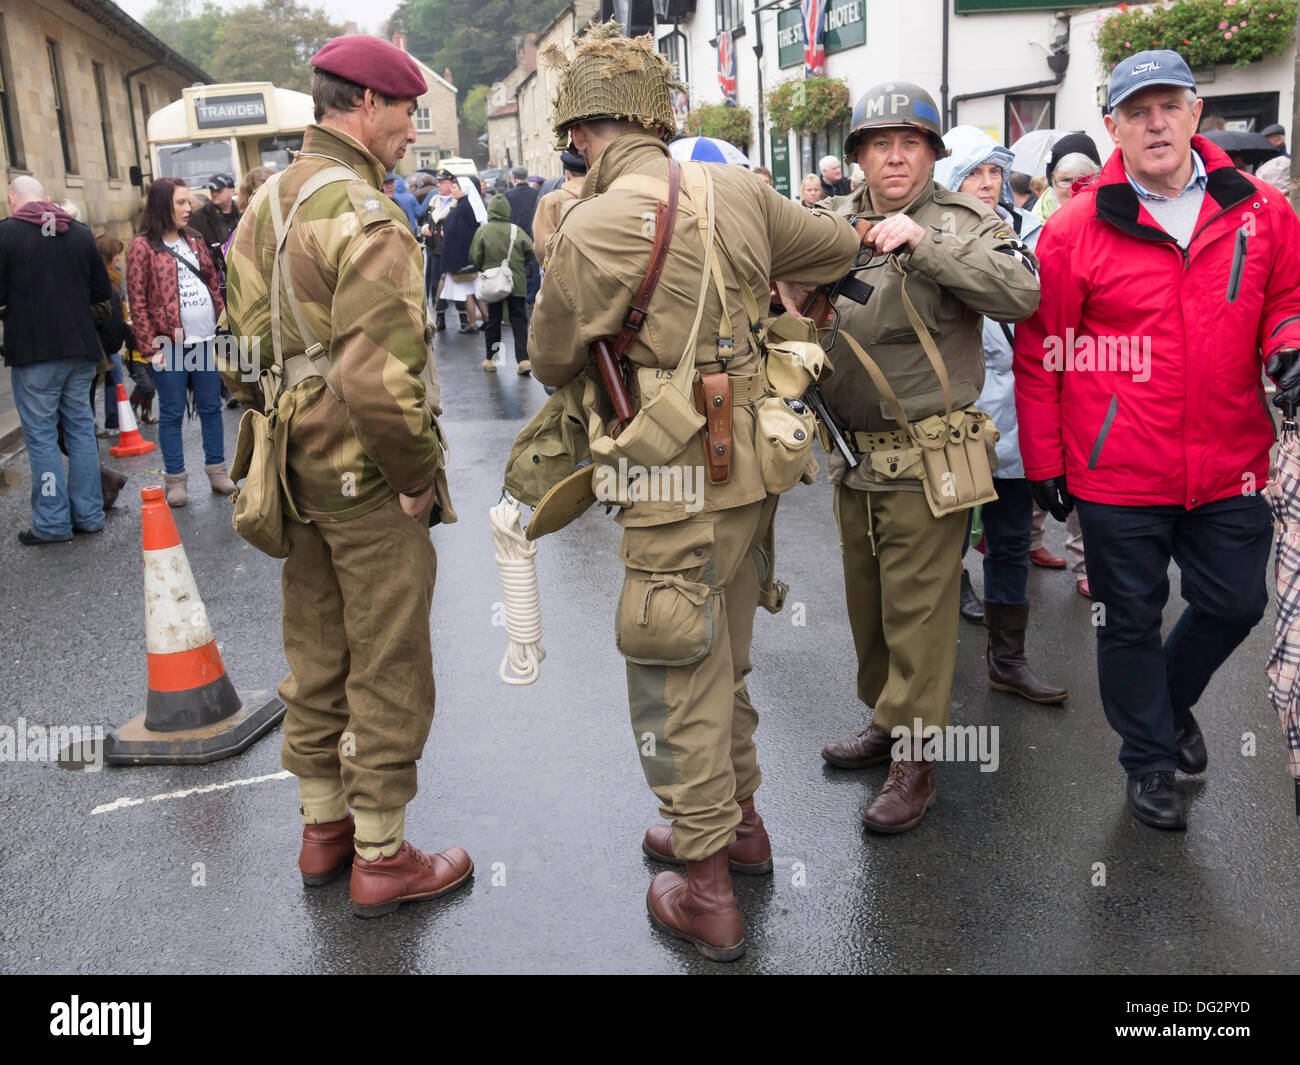 Trois hommes habillés en soldats de la seconde guerre mondiale, un parachutiste britannique un homme d'infanterie américaine et un policier militaire américain, à Pickering, North Yorkshire Angleterre UK pour la guerre et en 1940 week-end 2013 Banque D'Images